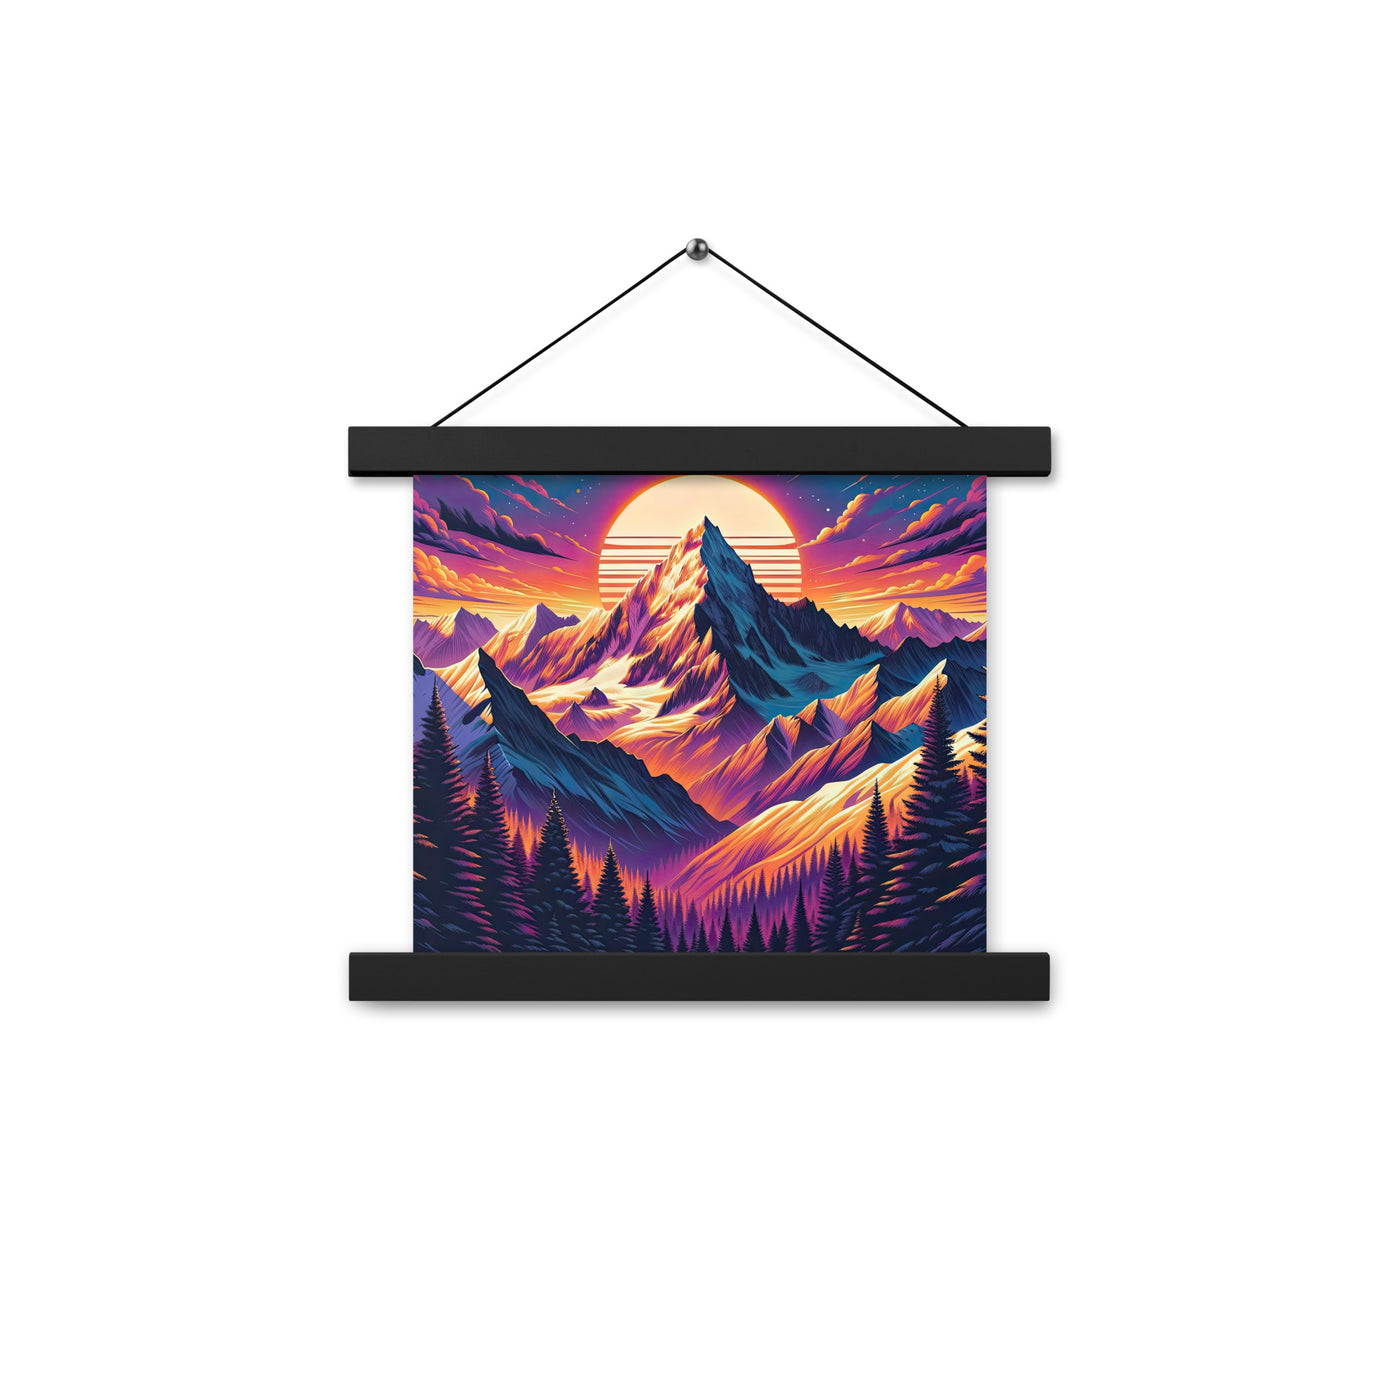 Lebendiger Alpen-Sonnenuntergang, schneebedeckte Gipfel in warmen Tönen - Premium Poster mit Aufhängung berge xxx yyy zzz 25.4 x 25.4 cm